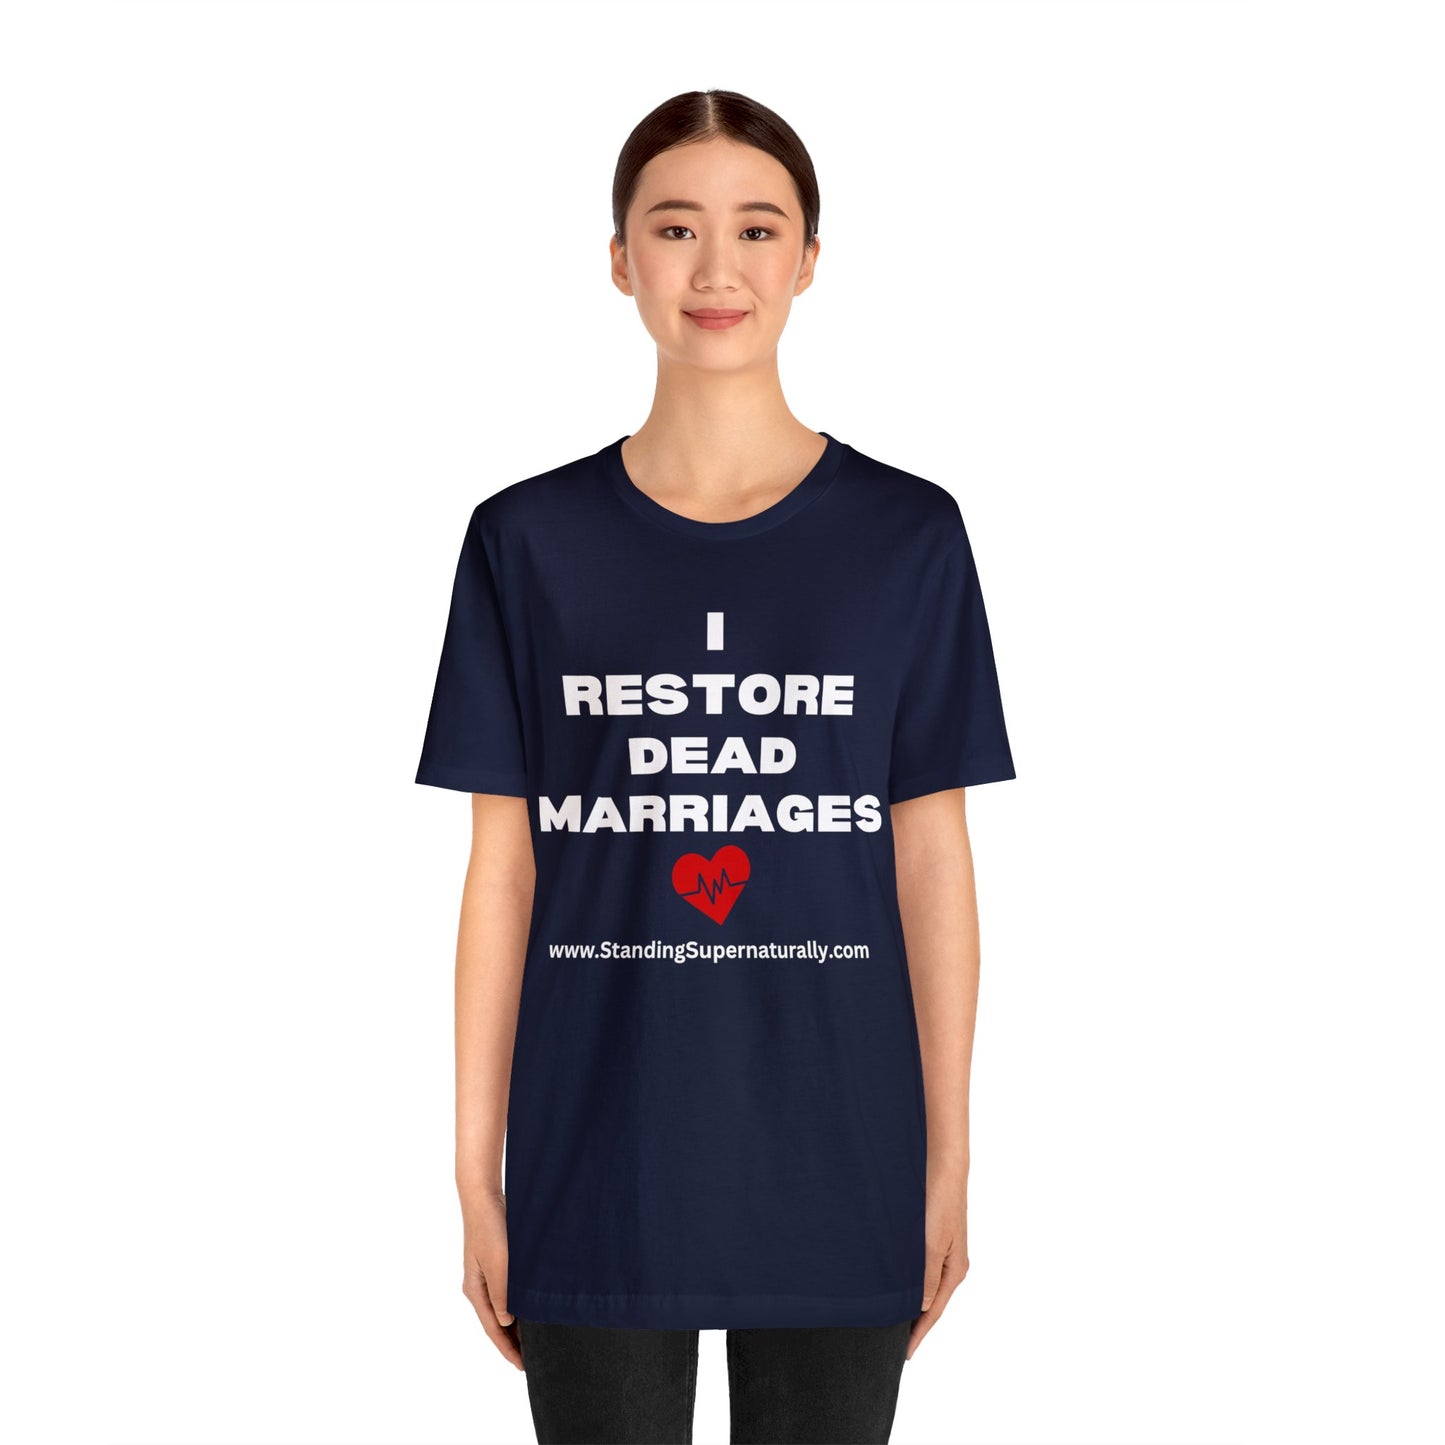 I Restore Dead Marriages - T Shirt